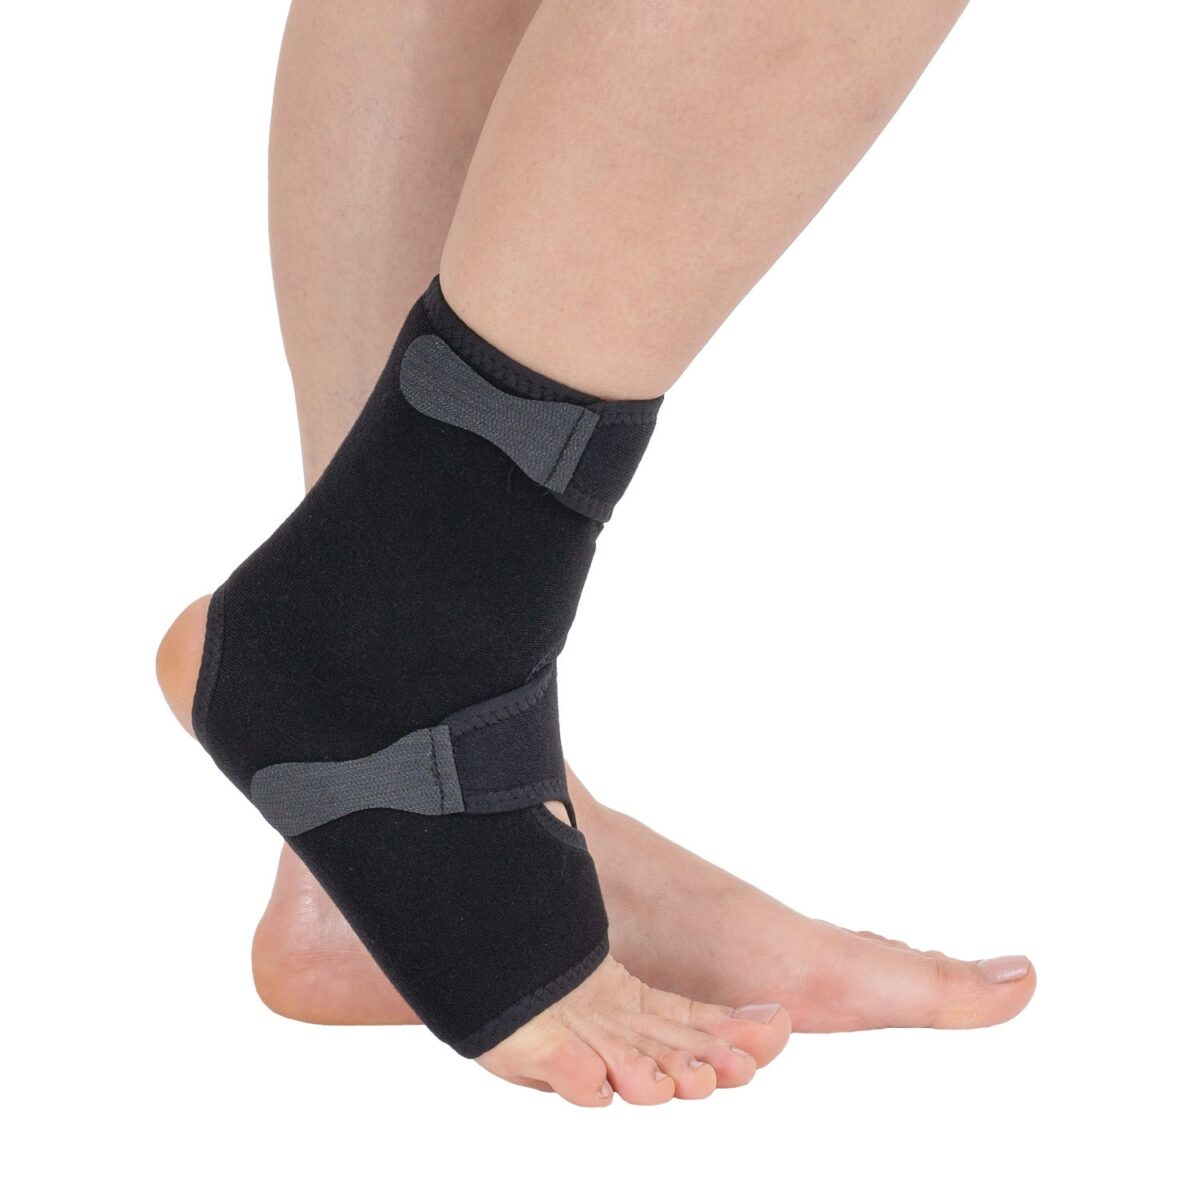 Chevillière simple avec bandage en huit orthèses pied et cheville w603 wingmed produits orthopédiques 81 1